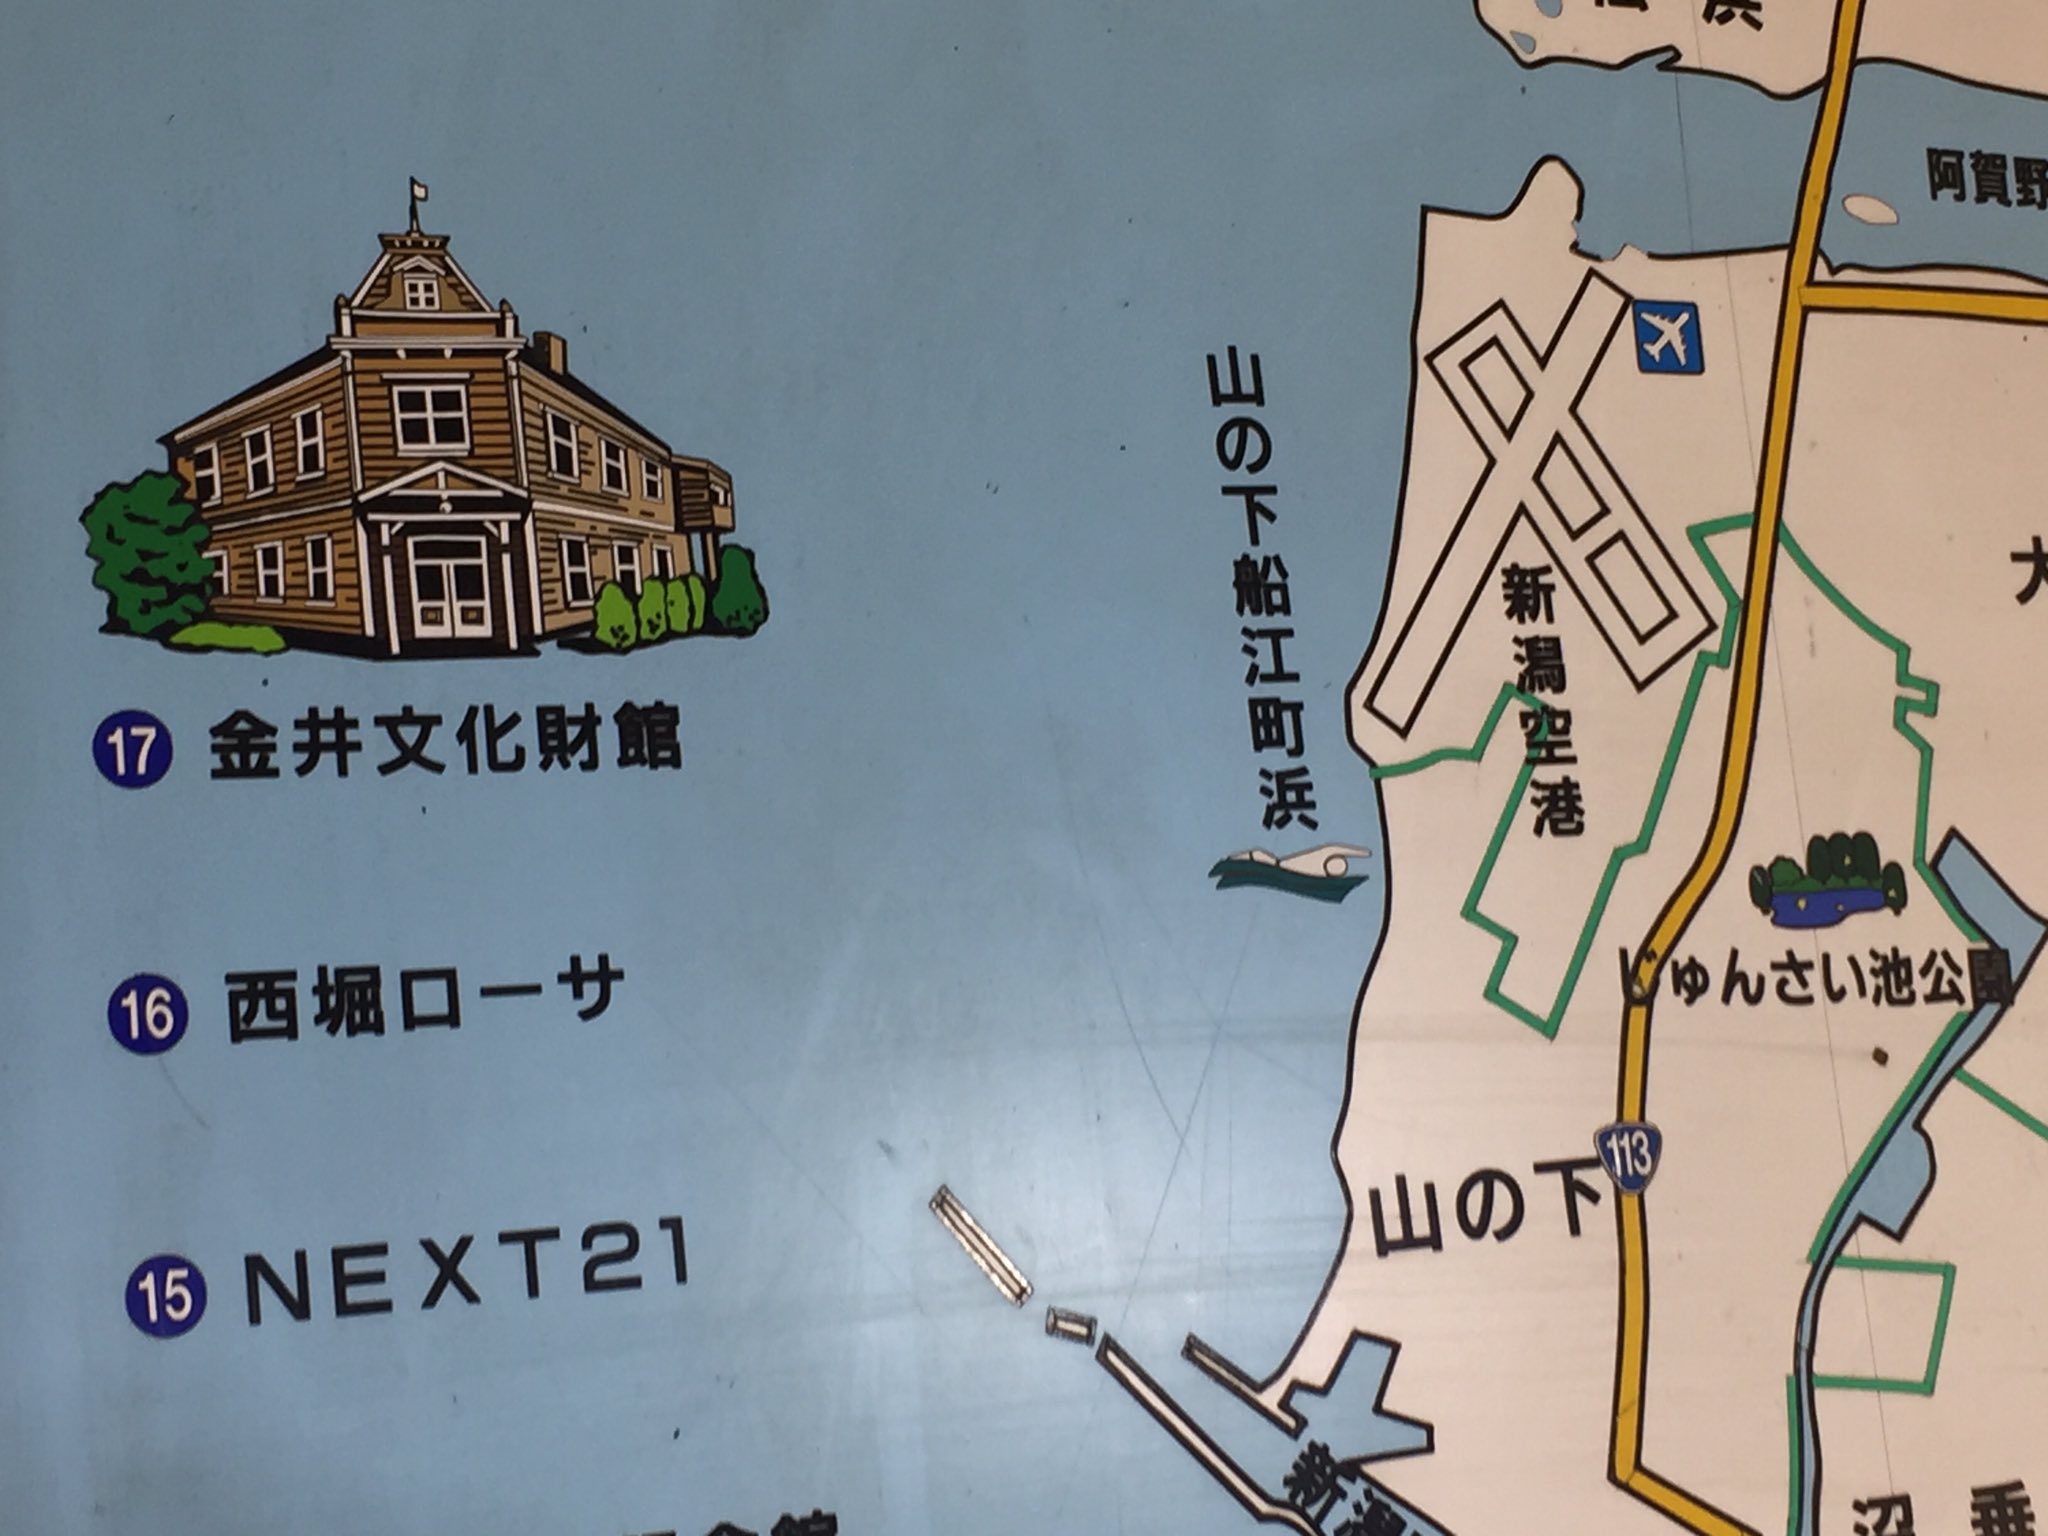 うたずき Dekky401にある新潟市の地図 謎なのがこれ 金井写真館てさ こういう名前だっけ 入館できる観光地だっけ いや見るだけにしてもさ 建物前に 撮影禁止 って看板あるよね 数ある新潟名所のなかで 貴重な イラスト化されてるの 何でだろ